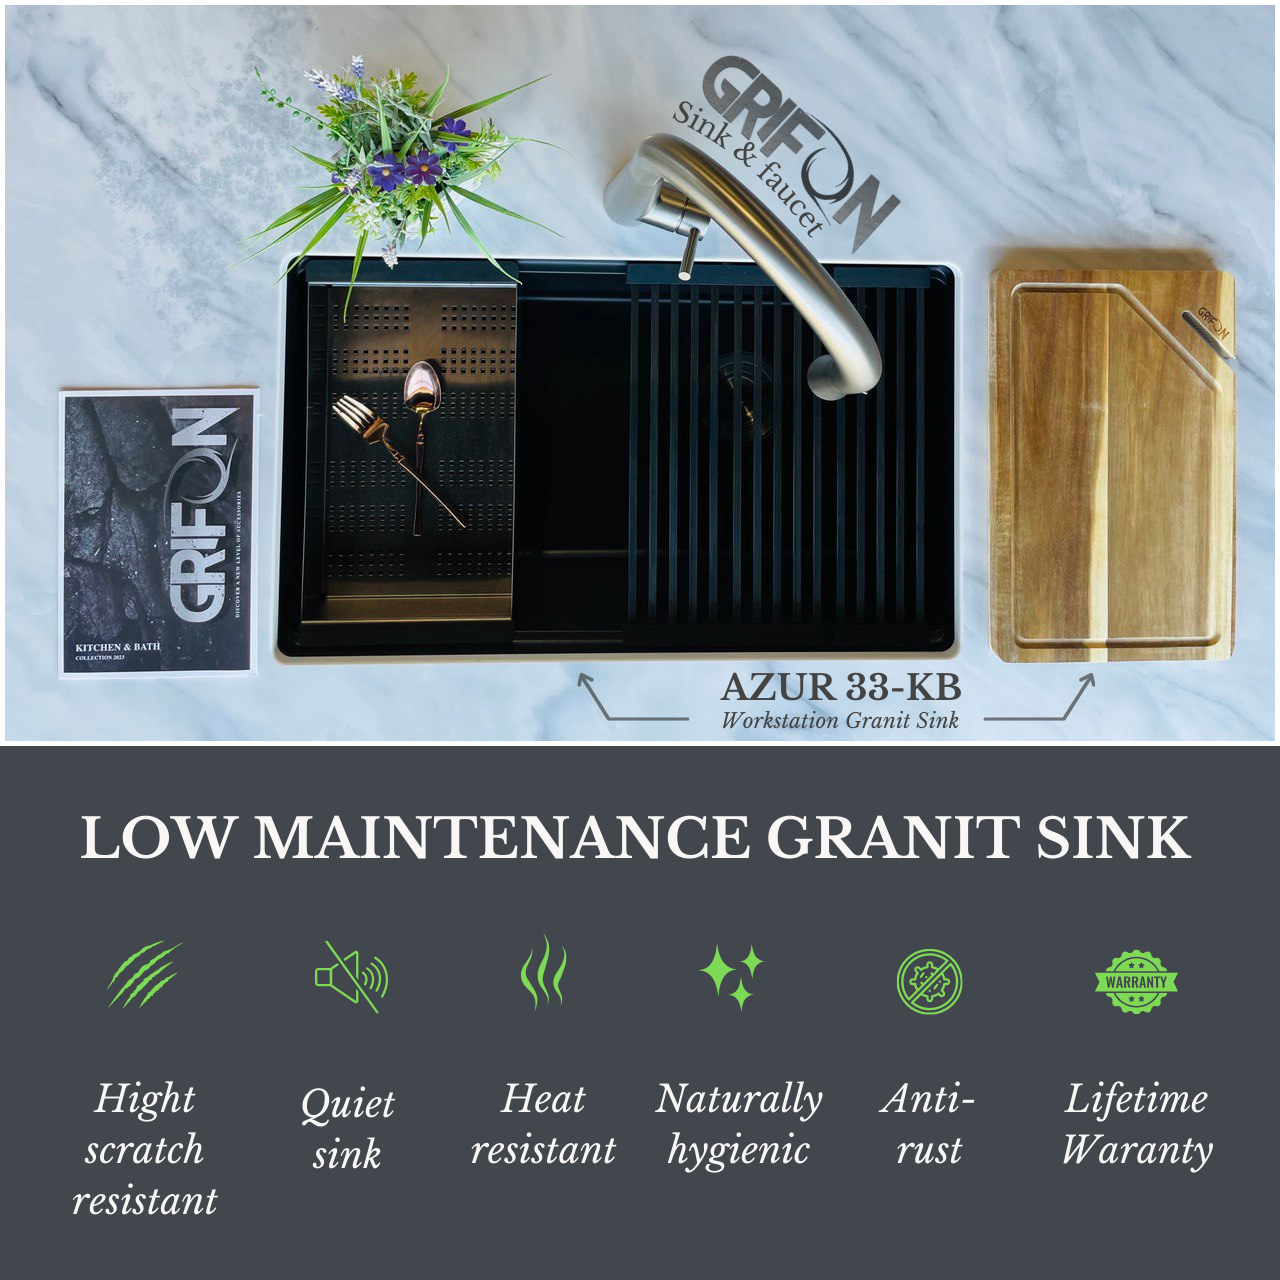 AZUR-30MB™ Granite 30-In Single Bowl Undermount Workstation Kitchen Sink